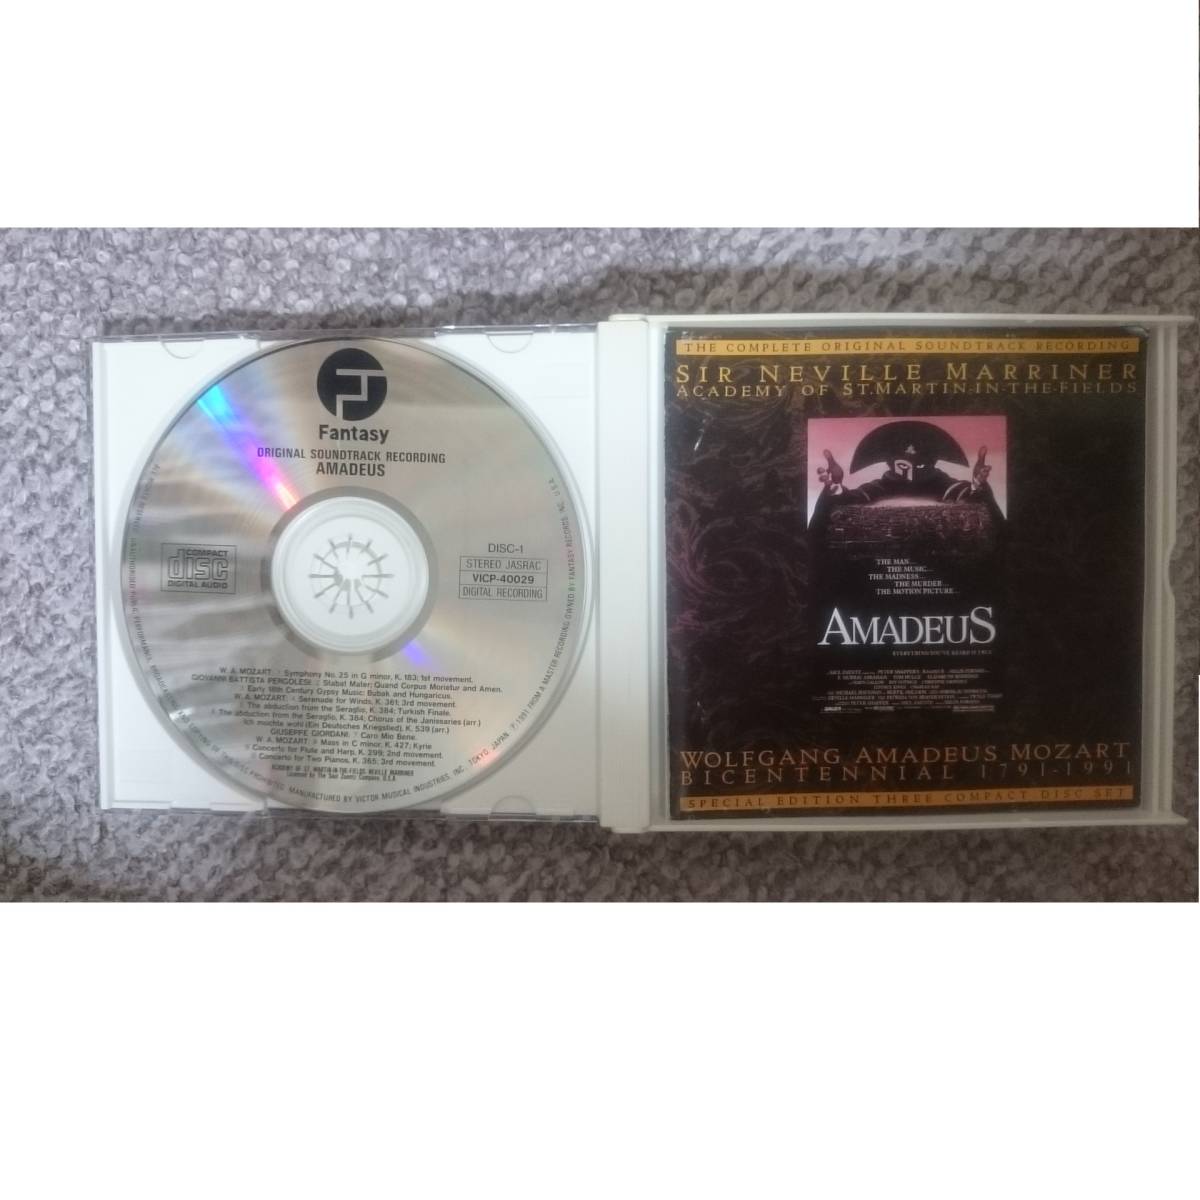 映画「アマデウス」オリジナルサウンドトラック 限定版CDボックス